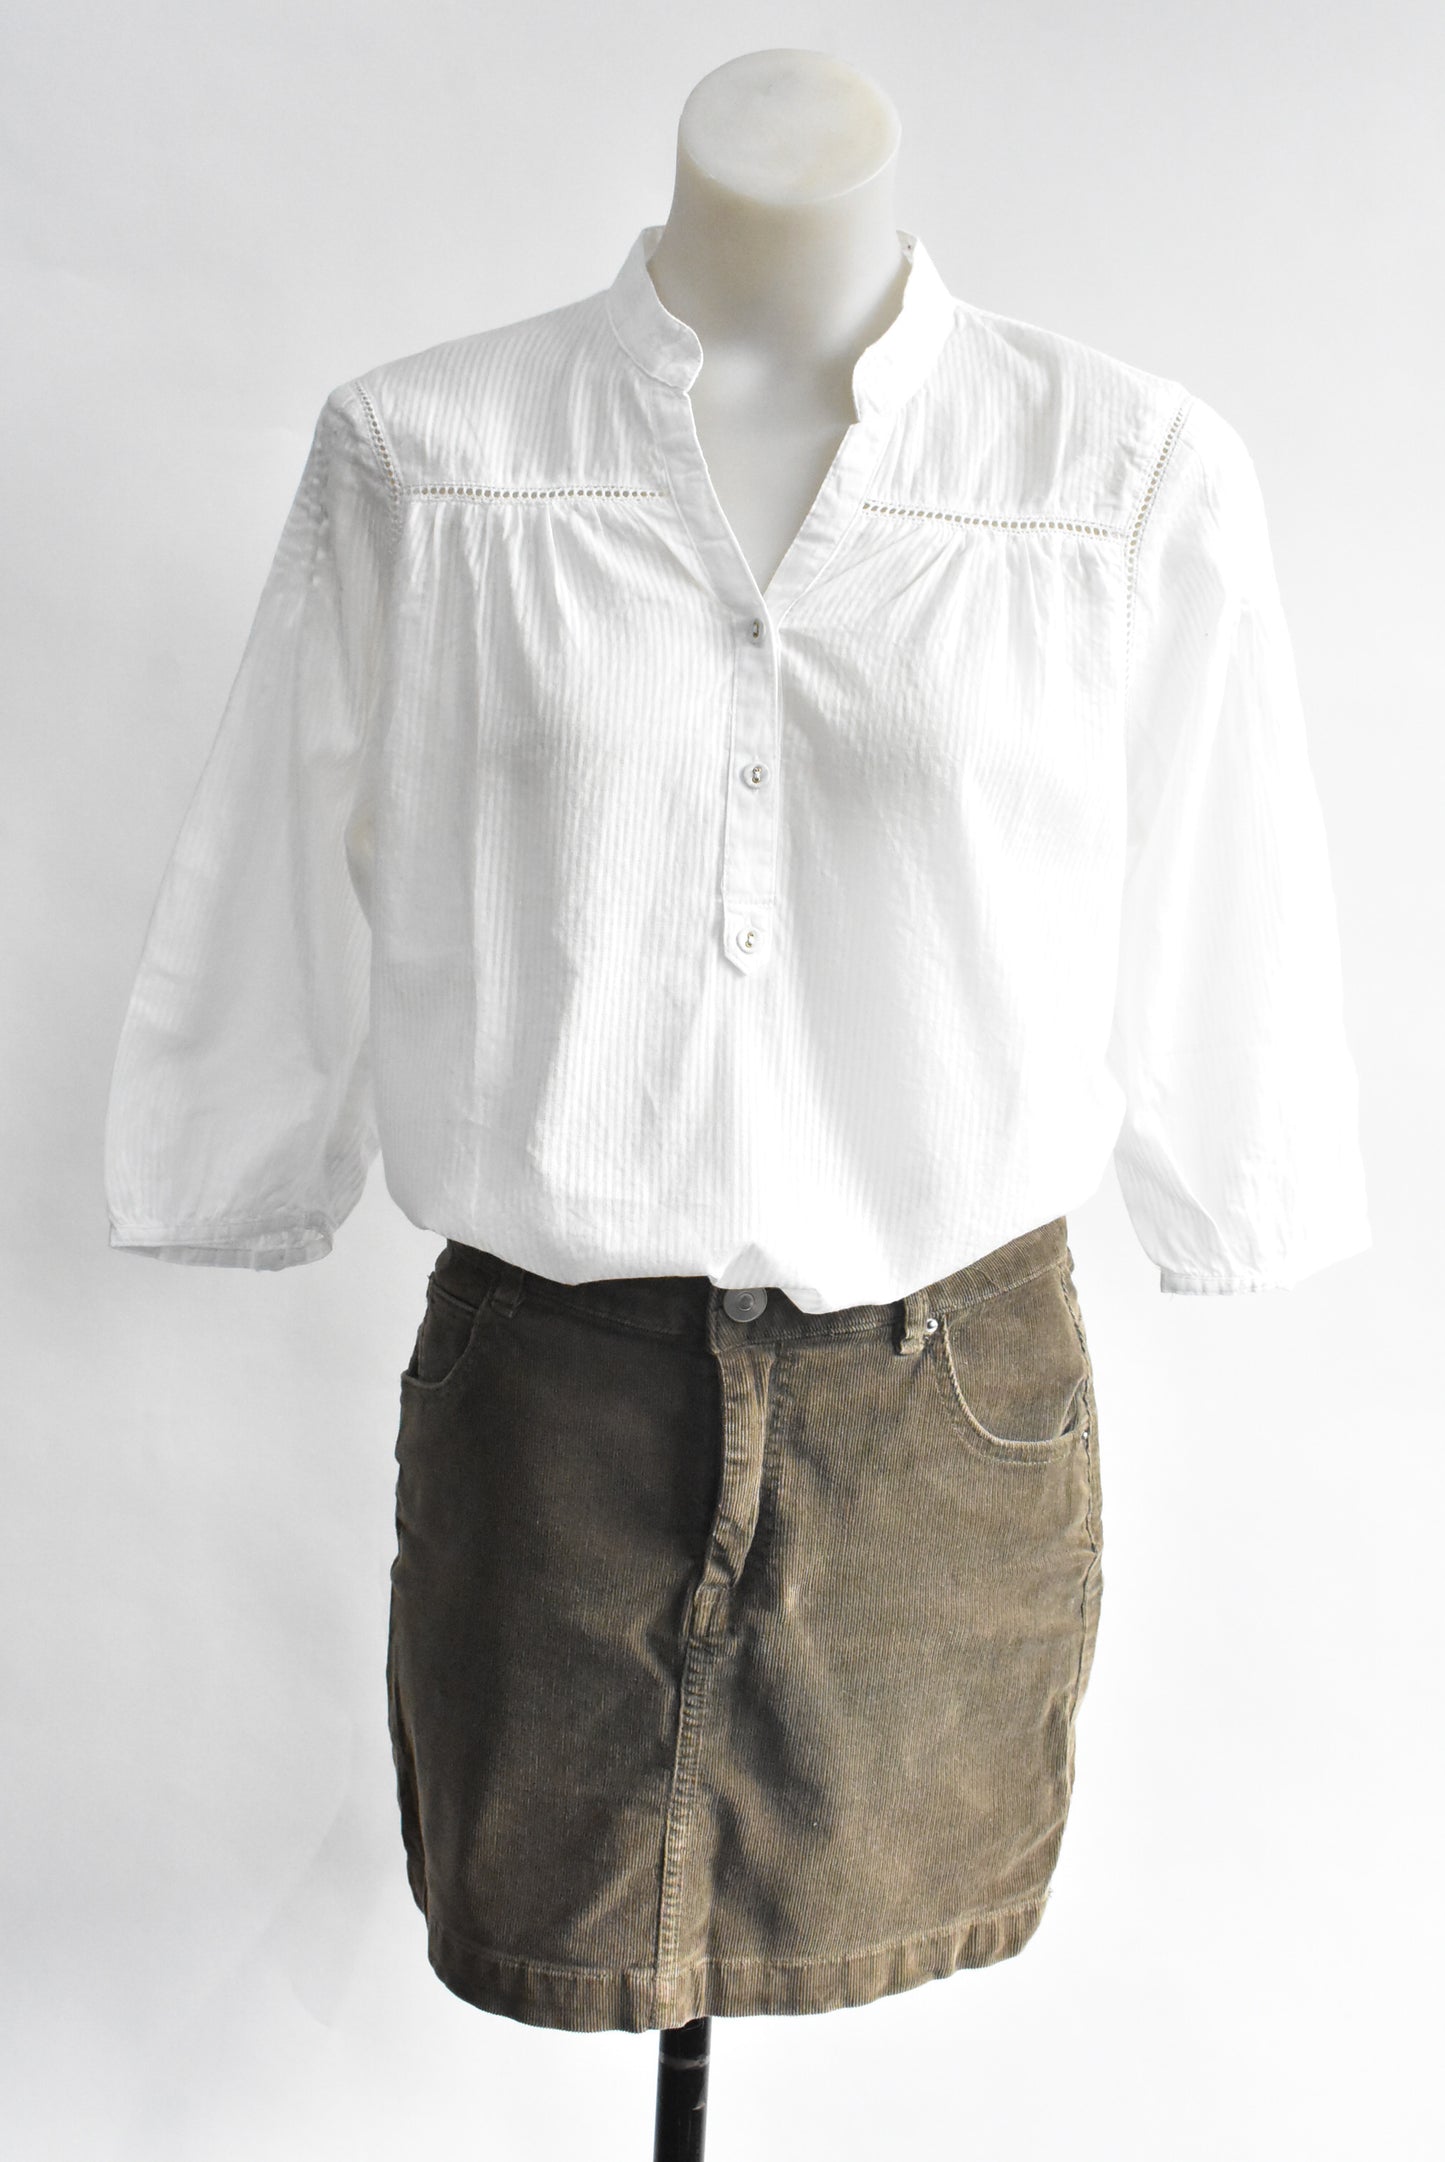 Classique white blouse, 14